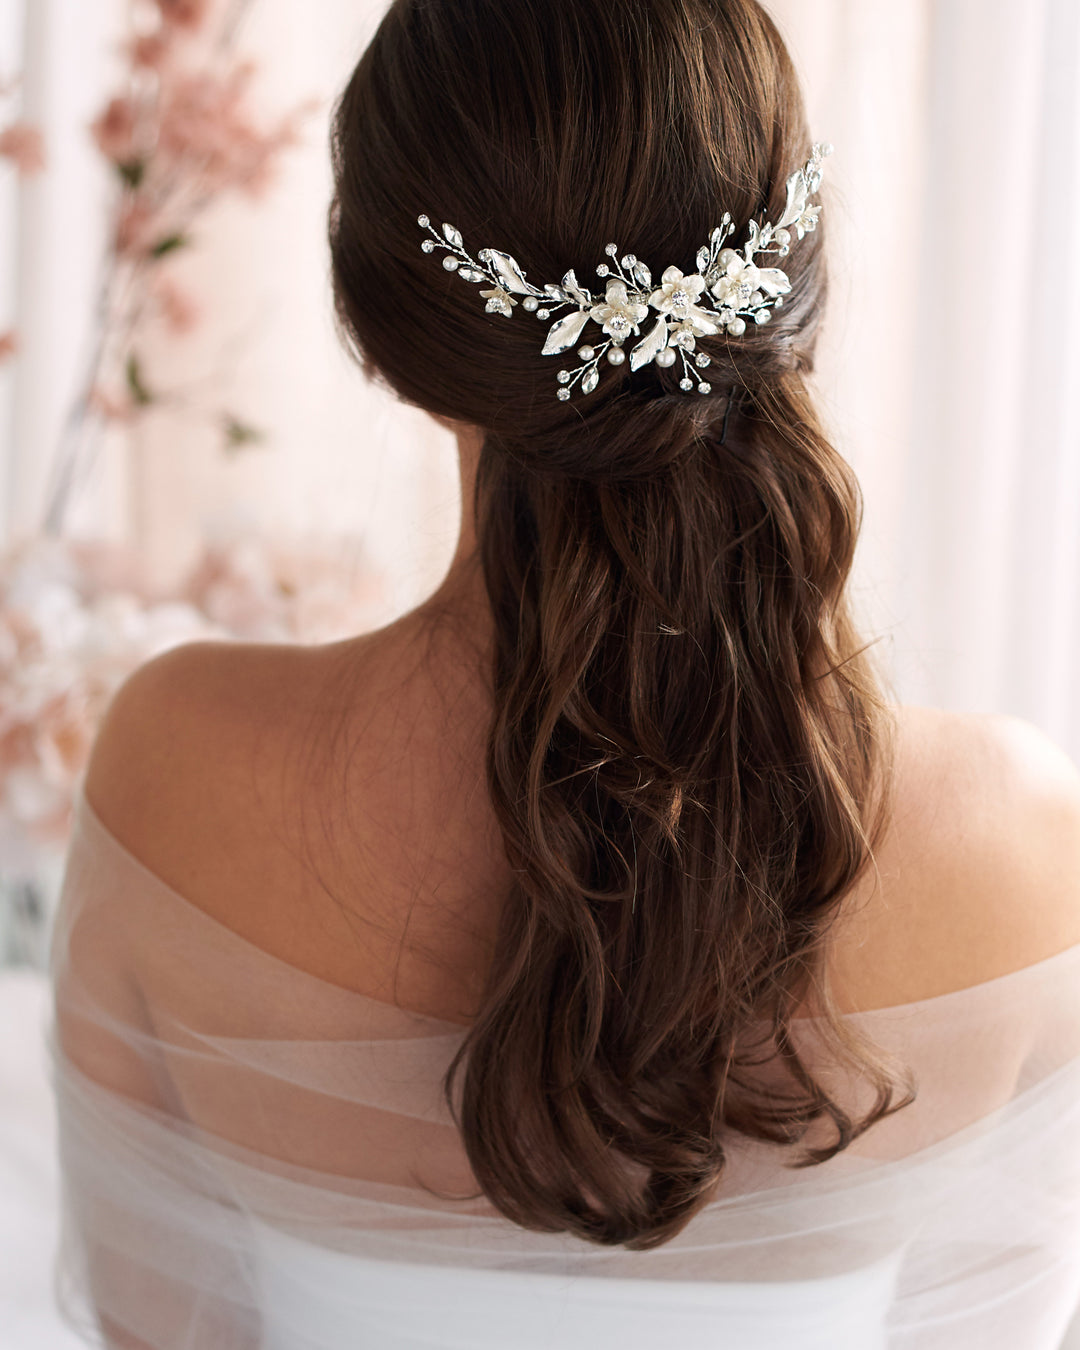 Sienna Rose Gold Bridal Hair Vine Bride Headpiece Wedding Hair Accessories  Floral Bridal Hair Vine 